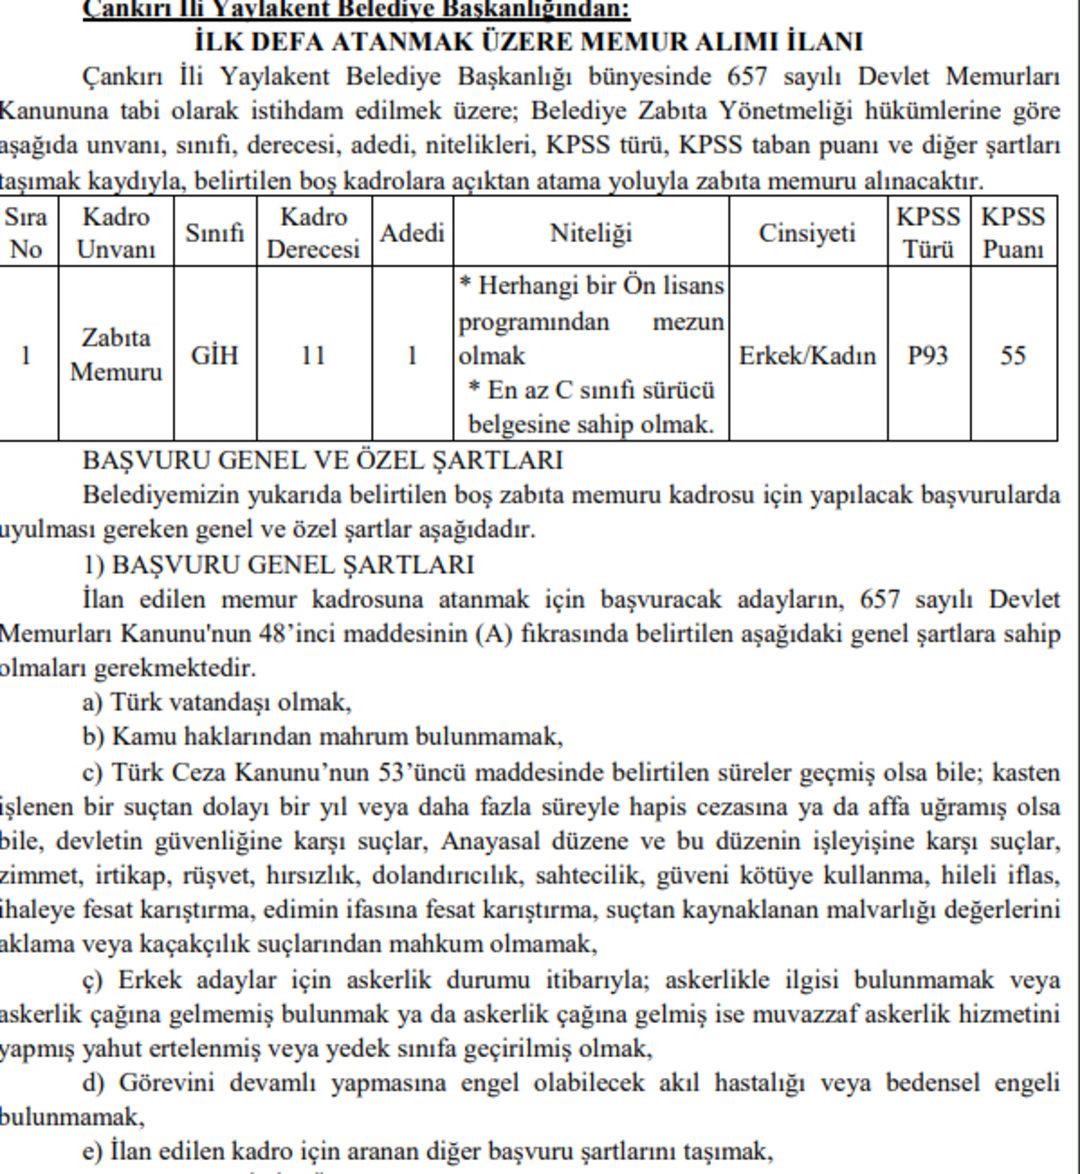 Çankırı Yaylakent Belediyesi Memur Alım İlanı 09.06.2022